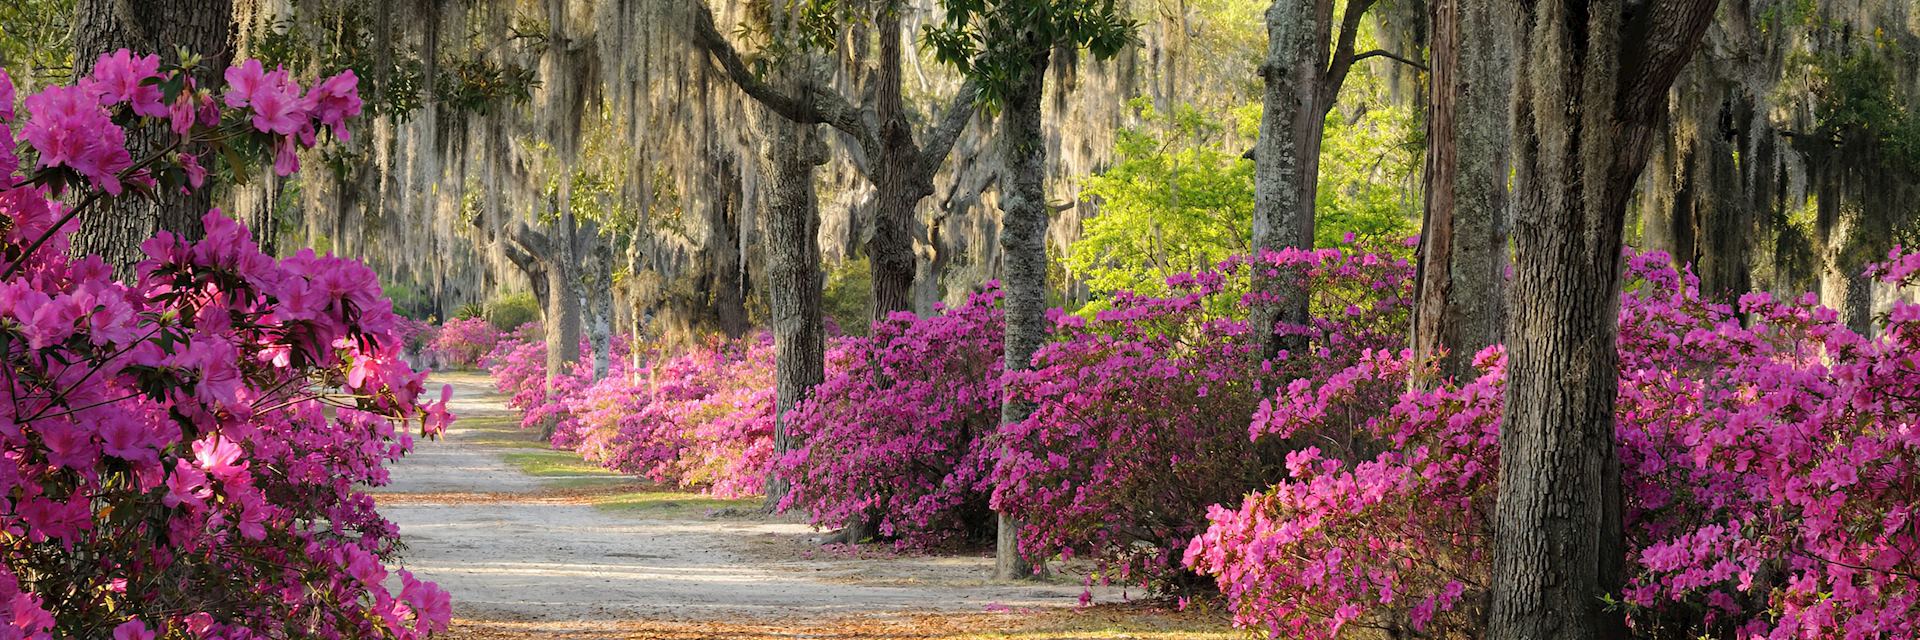 Live oaks and azaleas in Savannah